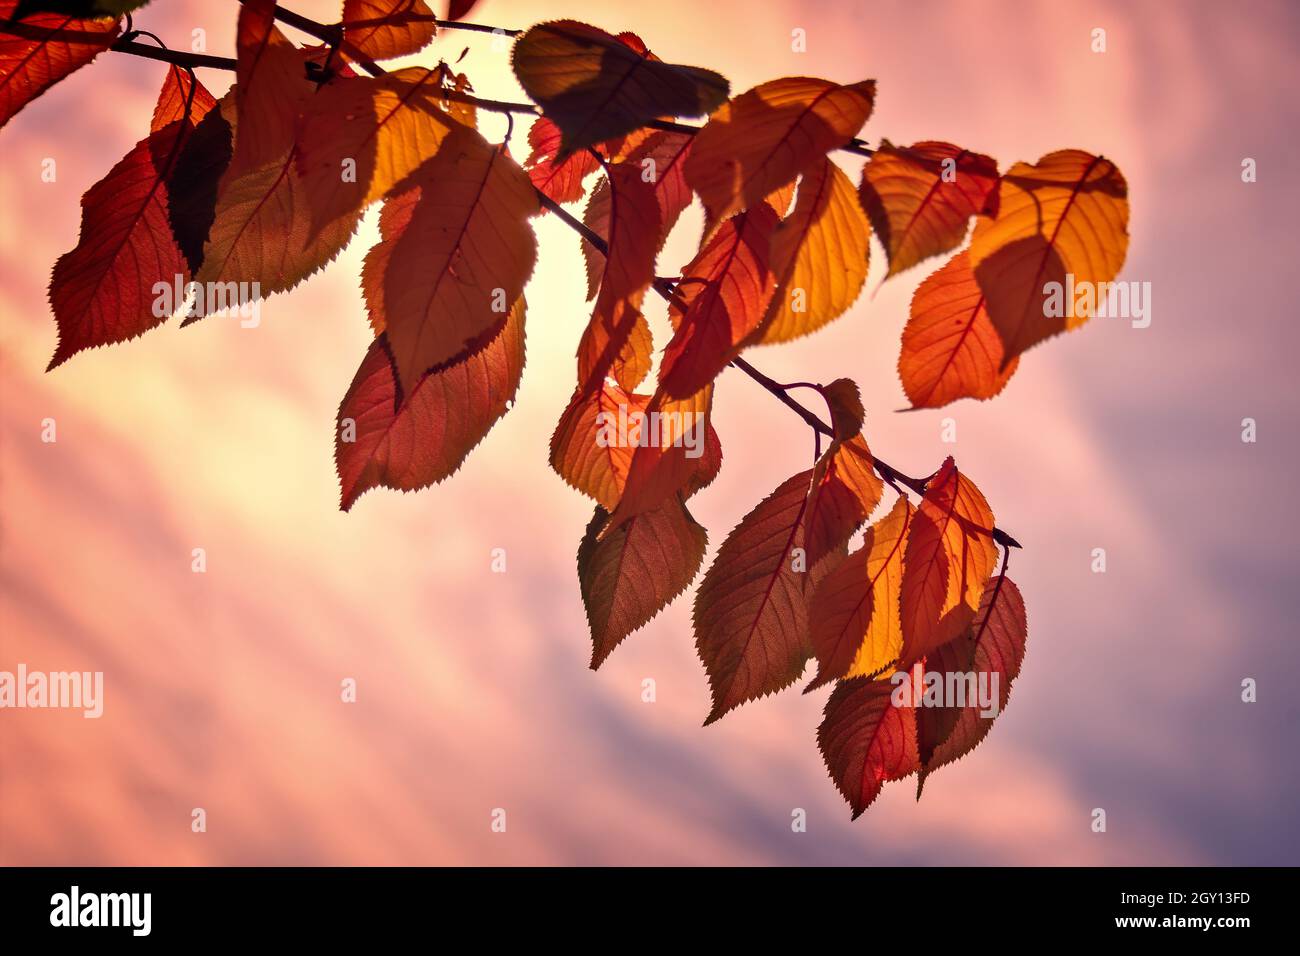 Hinterleuchtete rote Herbstblätter auf einem Ast, rosa Sonnenuntergang Himmel Hintergrund Stockfoto